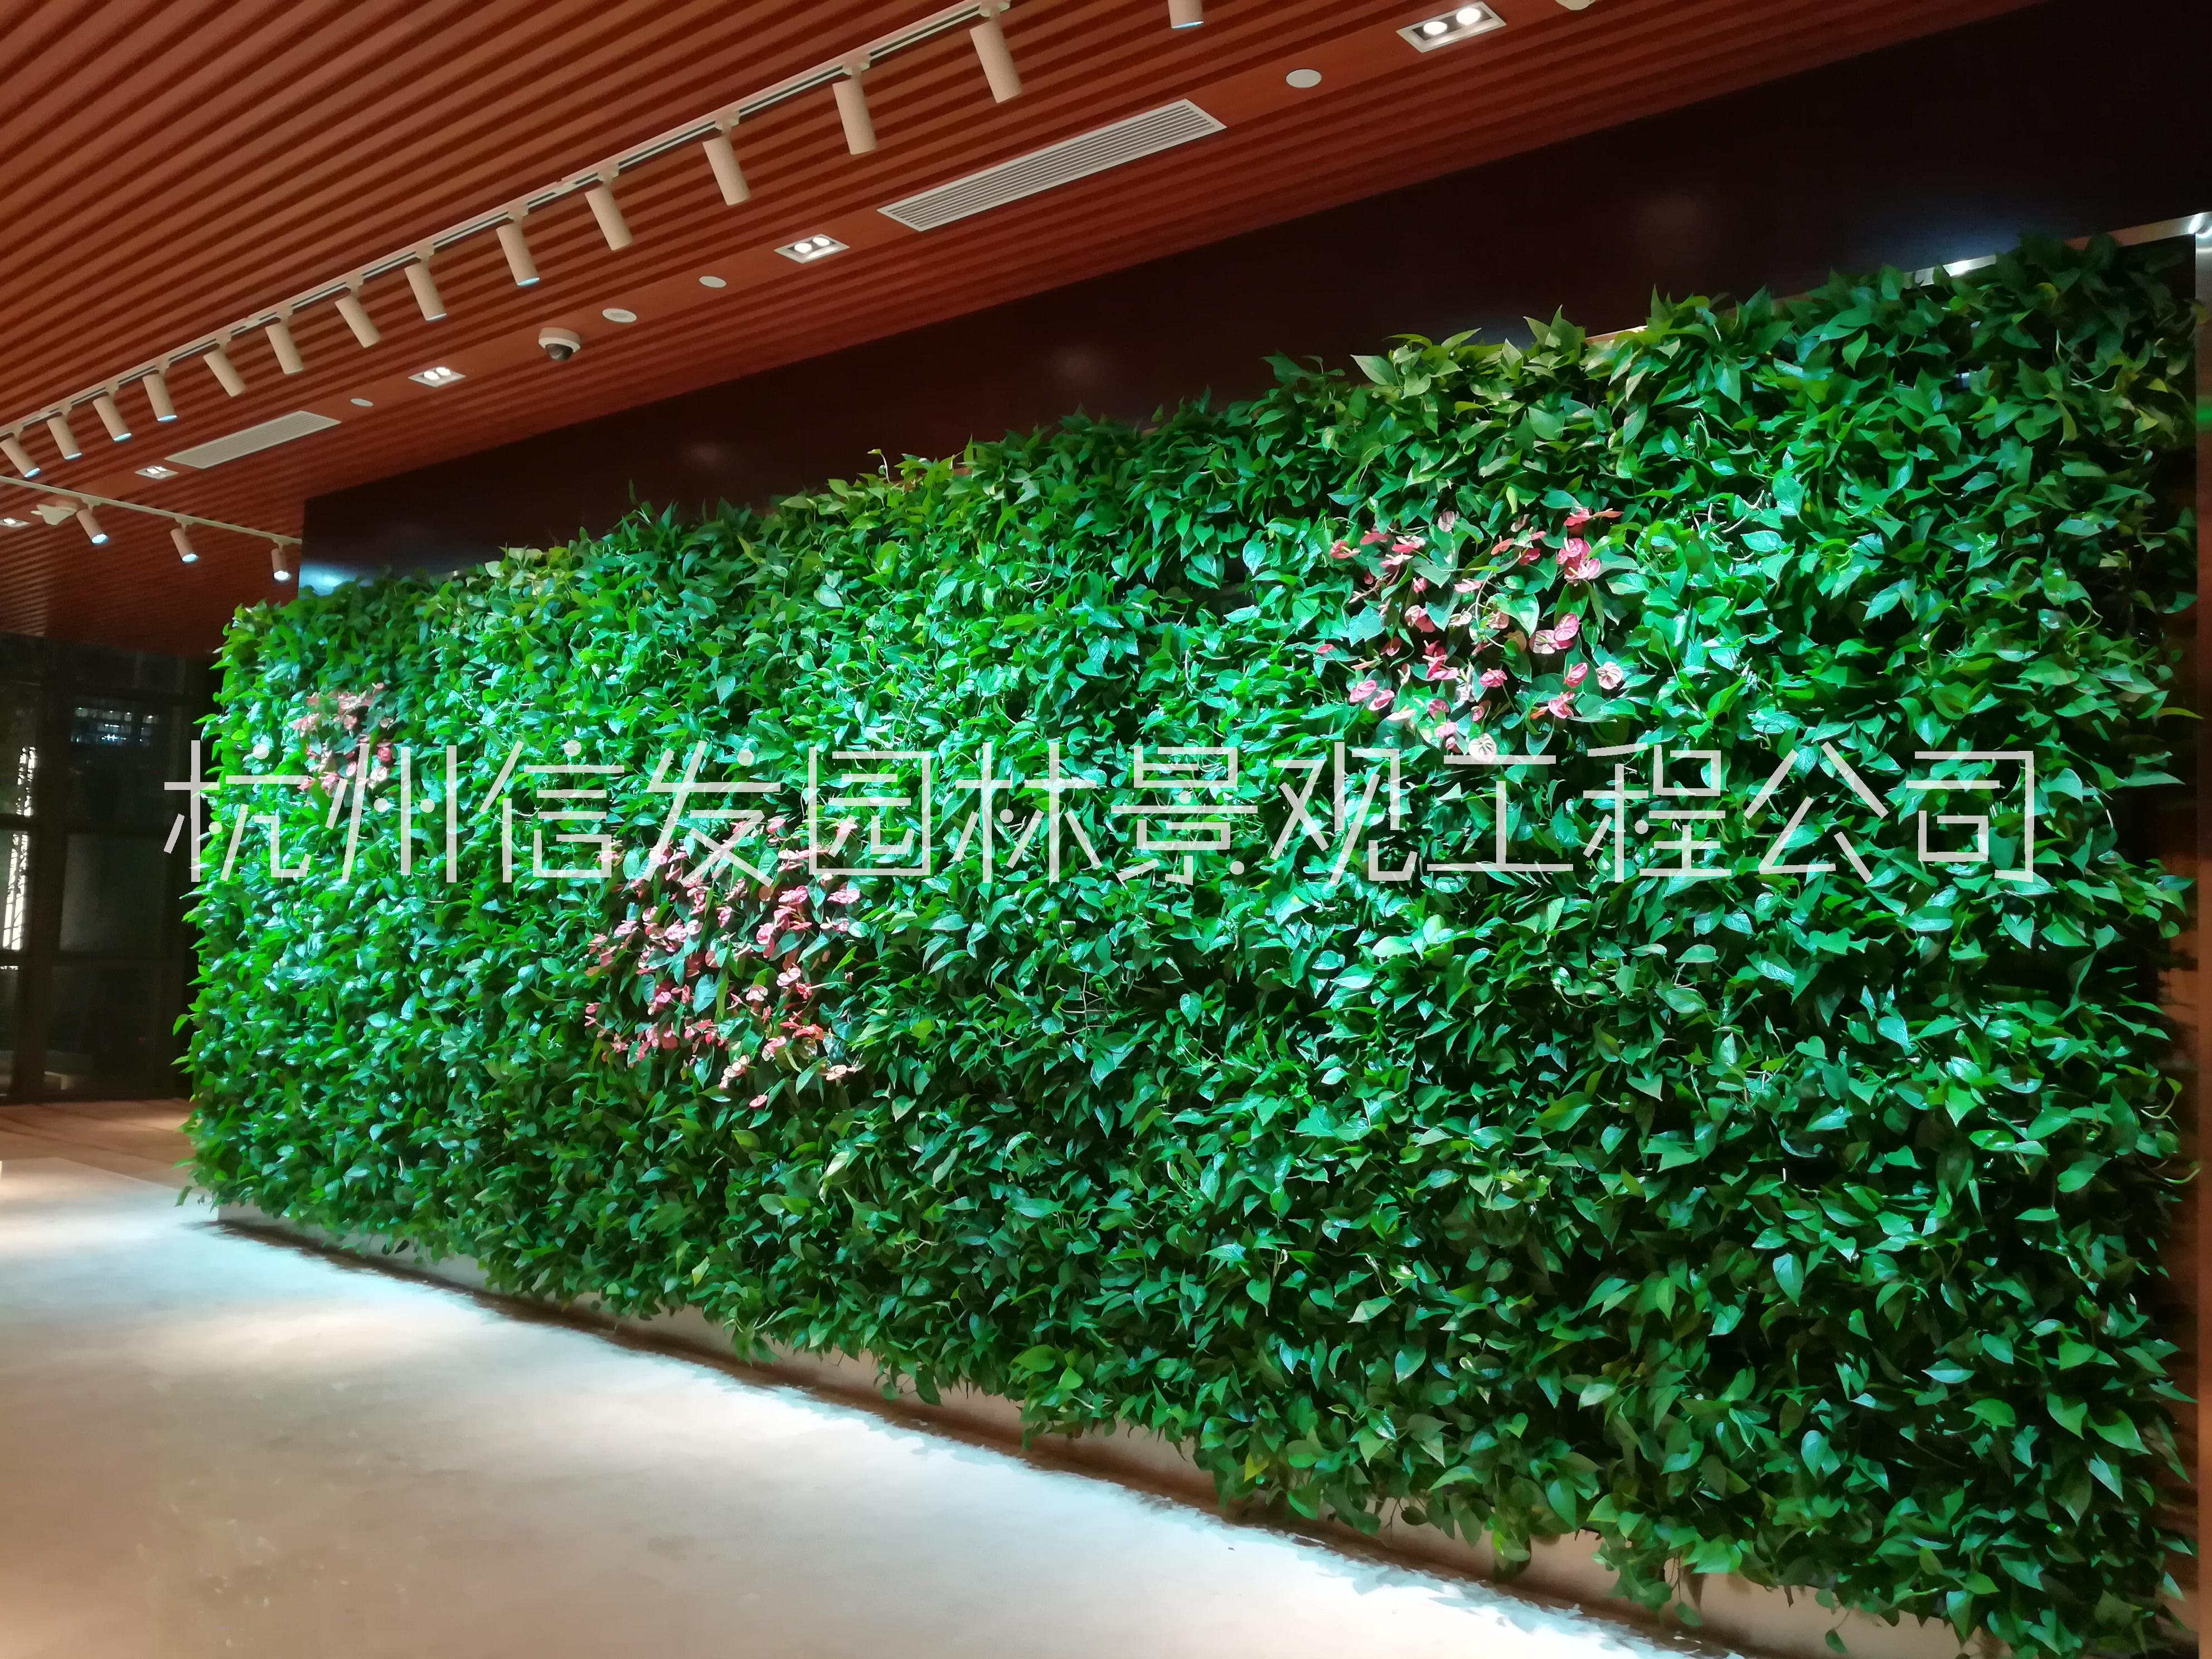 杭州植物墙绿化垂直绿化墙面公司 杭州植物墙垂直绿化墙面公司 杭州植物墙垂直绿化公司 杭州墙垂直绿化公司